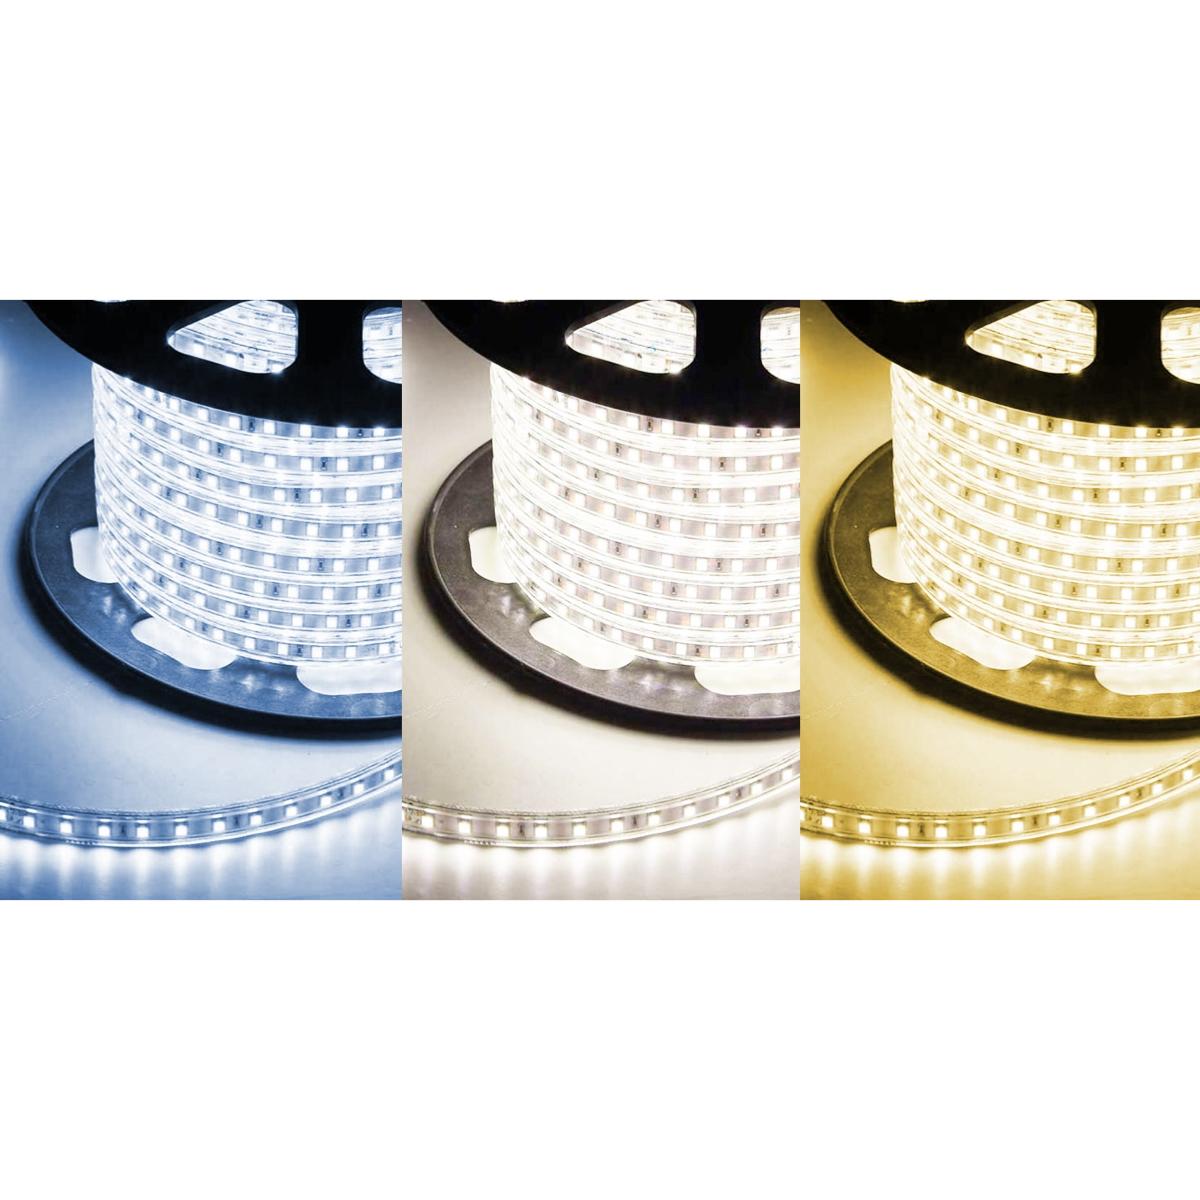 Ruban LED a Pile,Sunboia 2M Ruban LED à Pile Étanche IP65 imperméable 5050  60 LEDs Bande Lumineuse LED Strip éclairer pour Miroir Salon Armoire